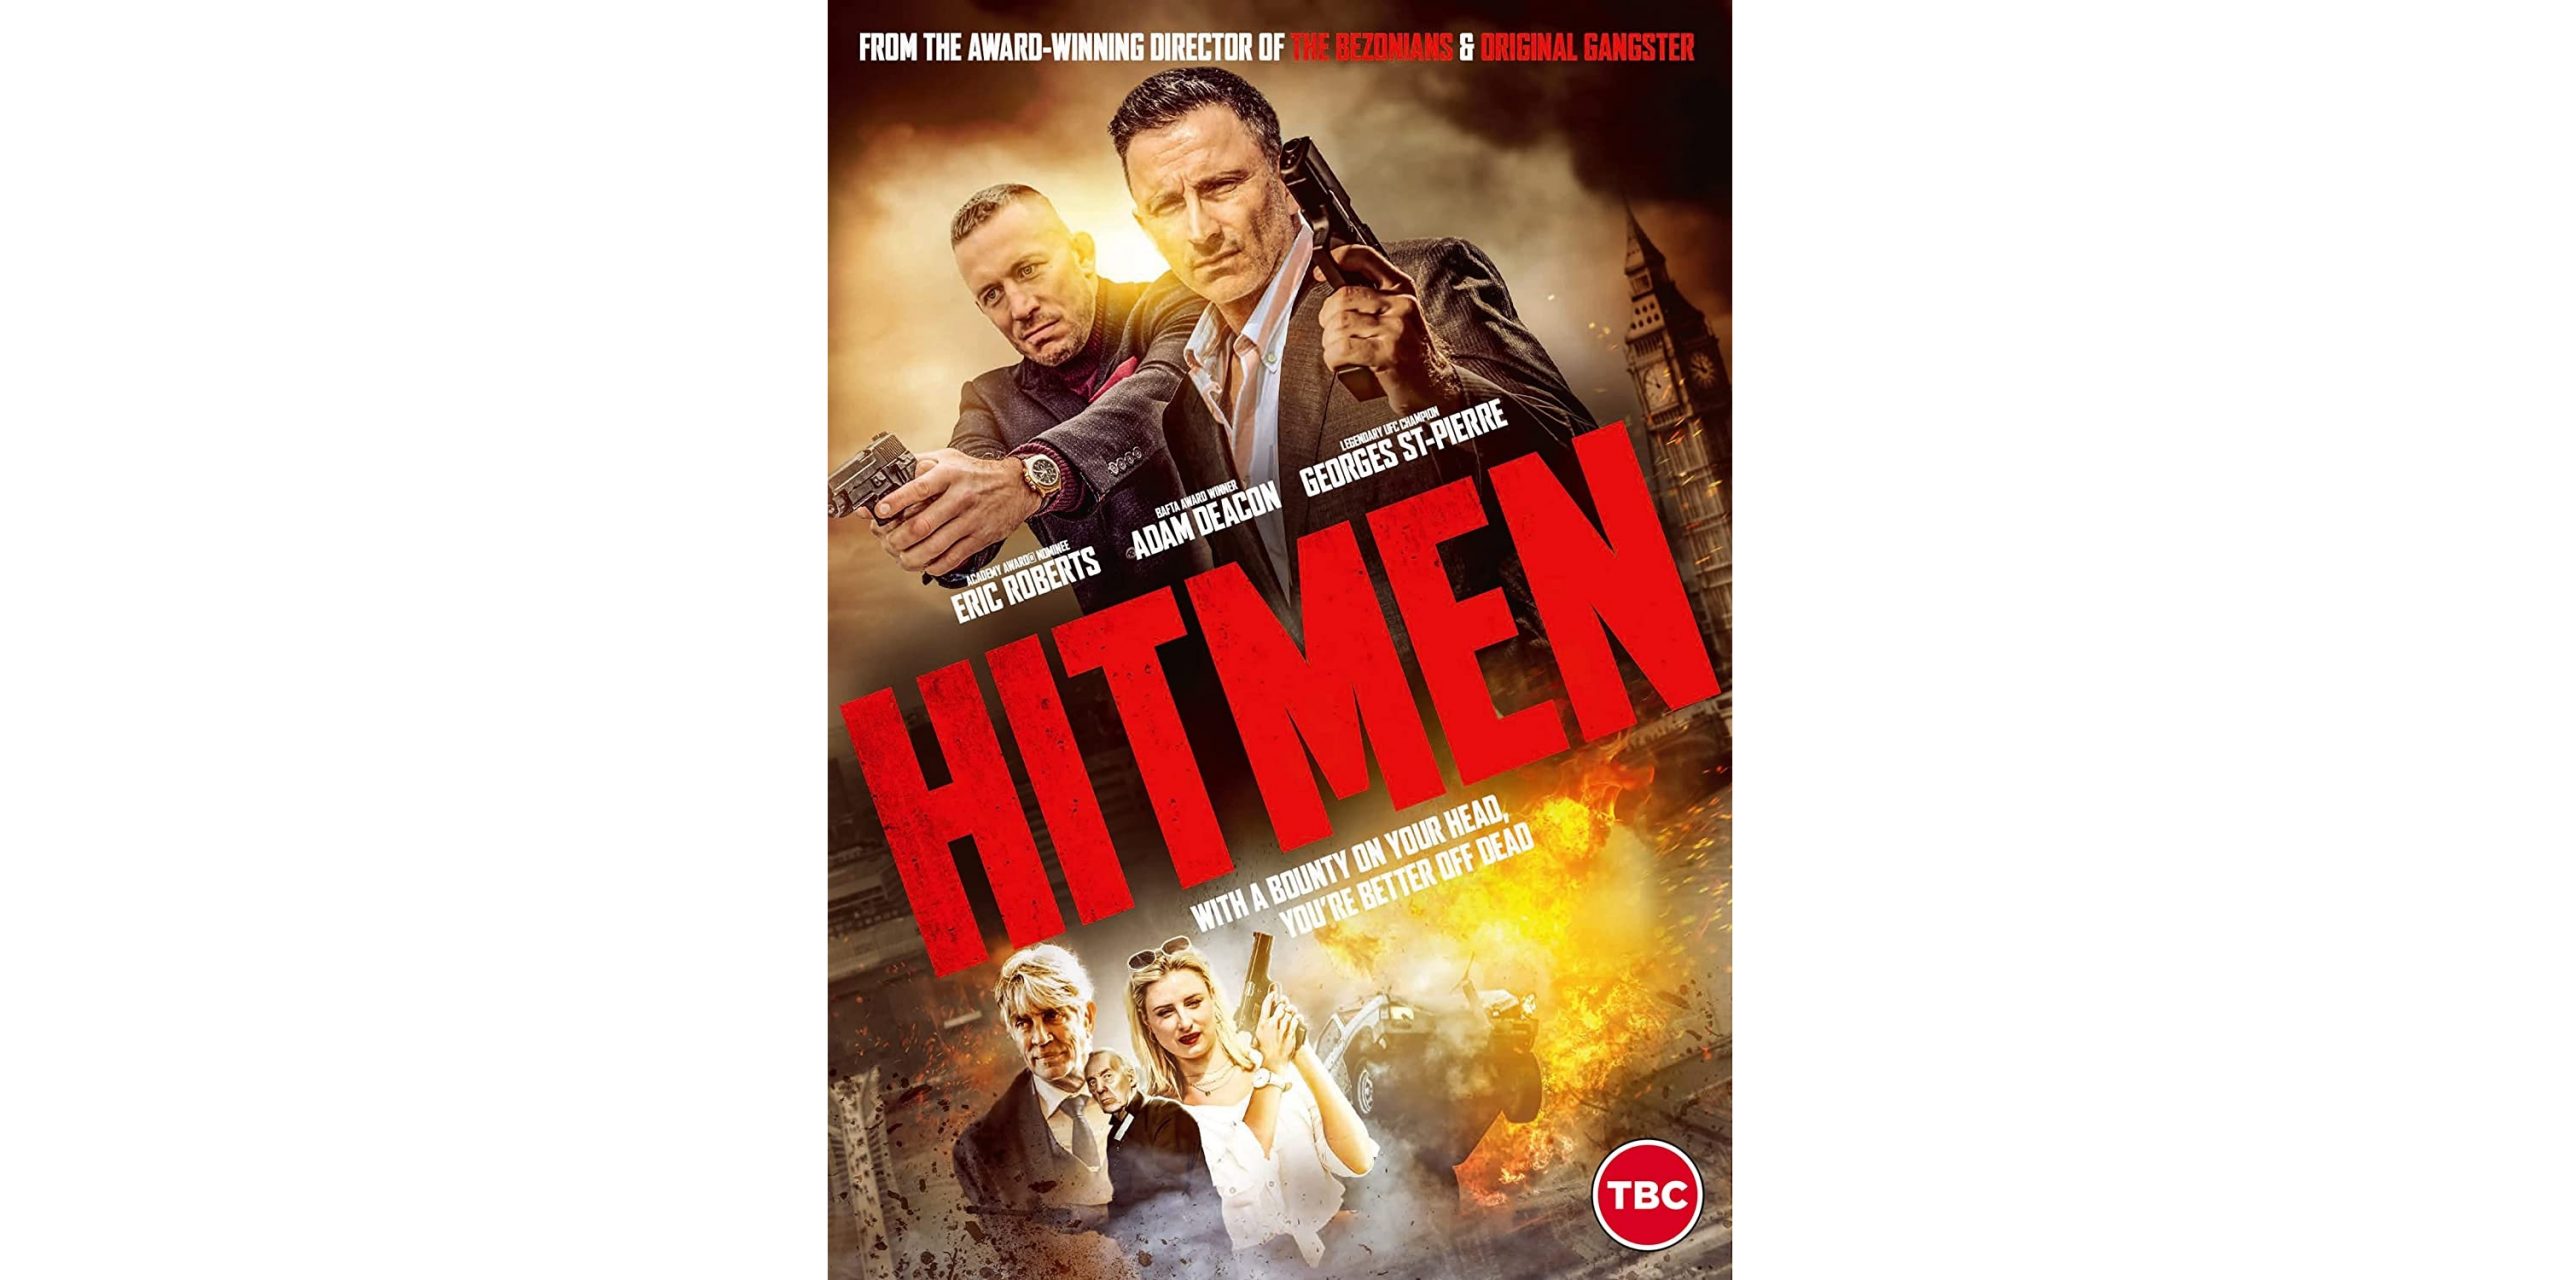 Hitmen DVD